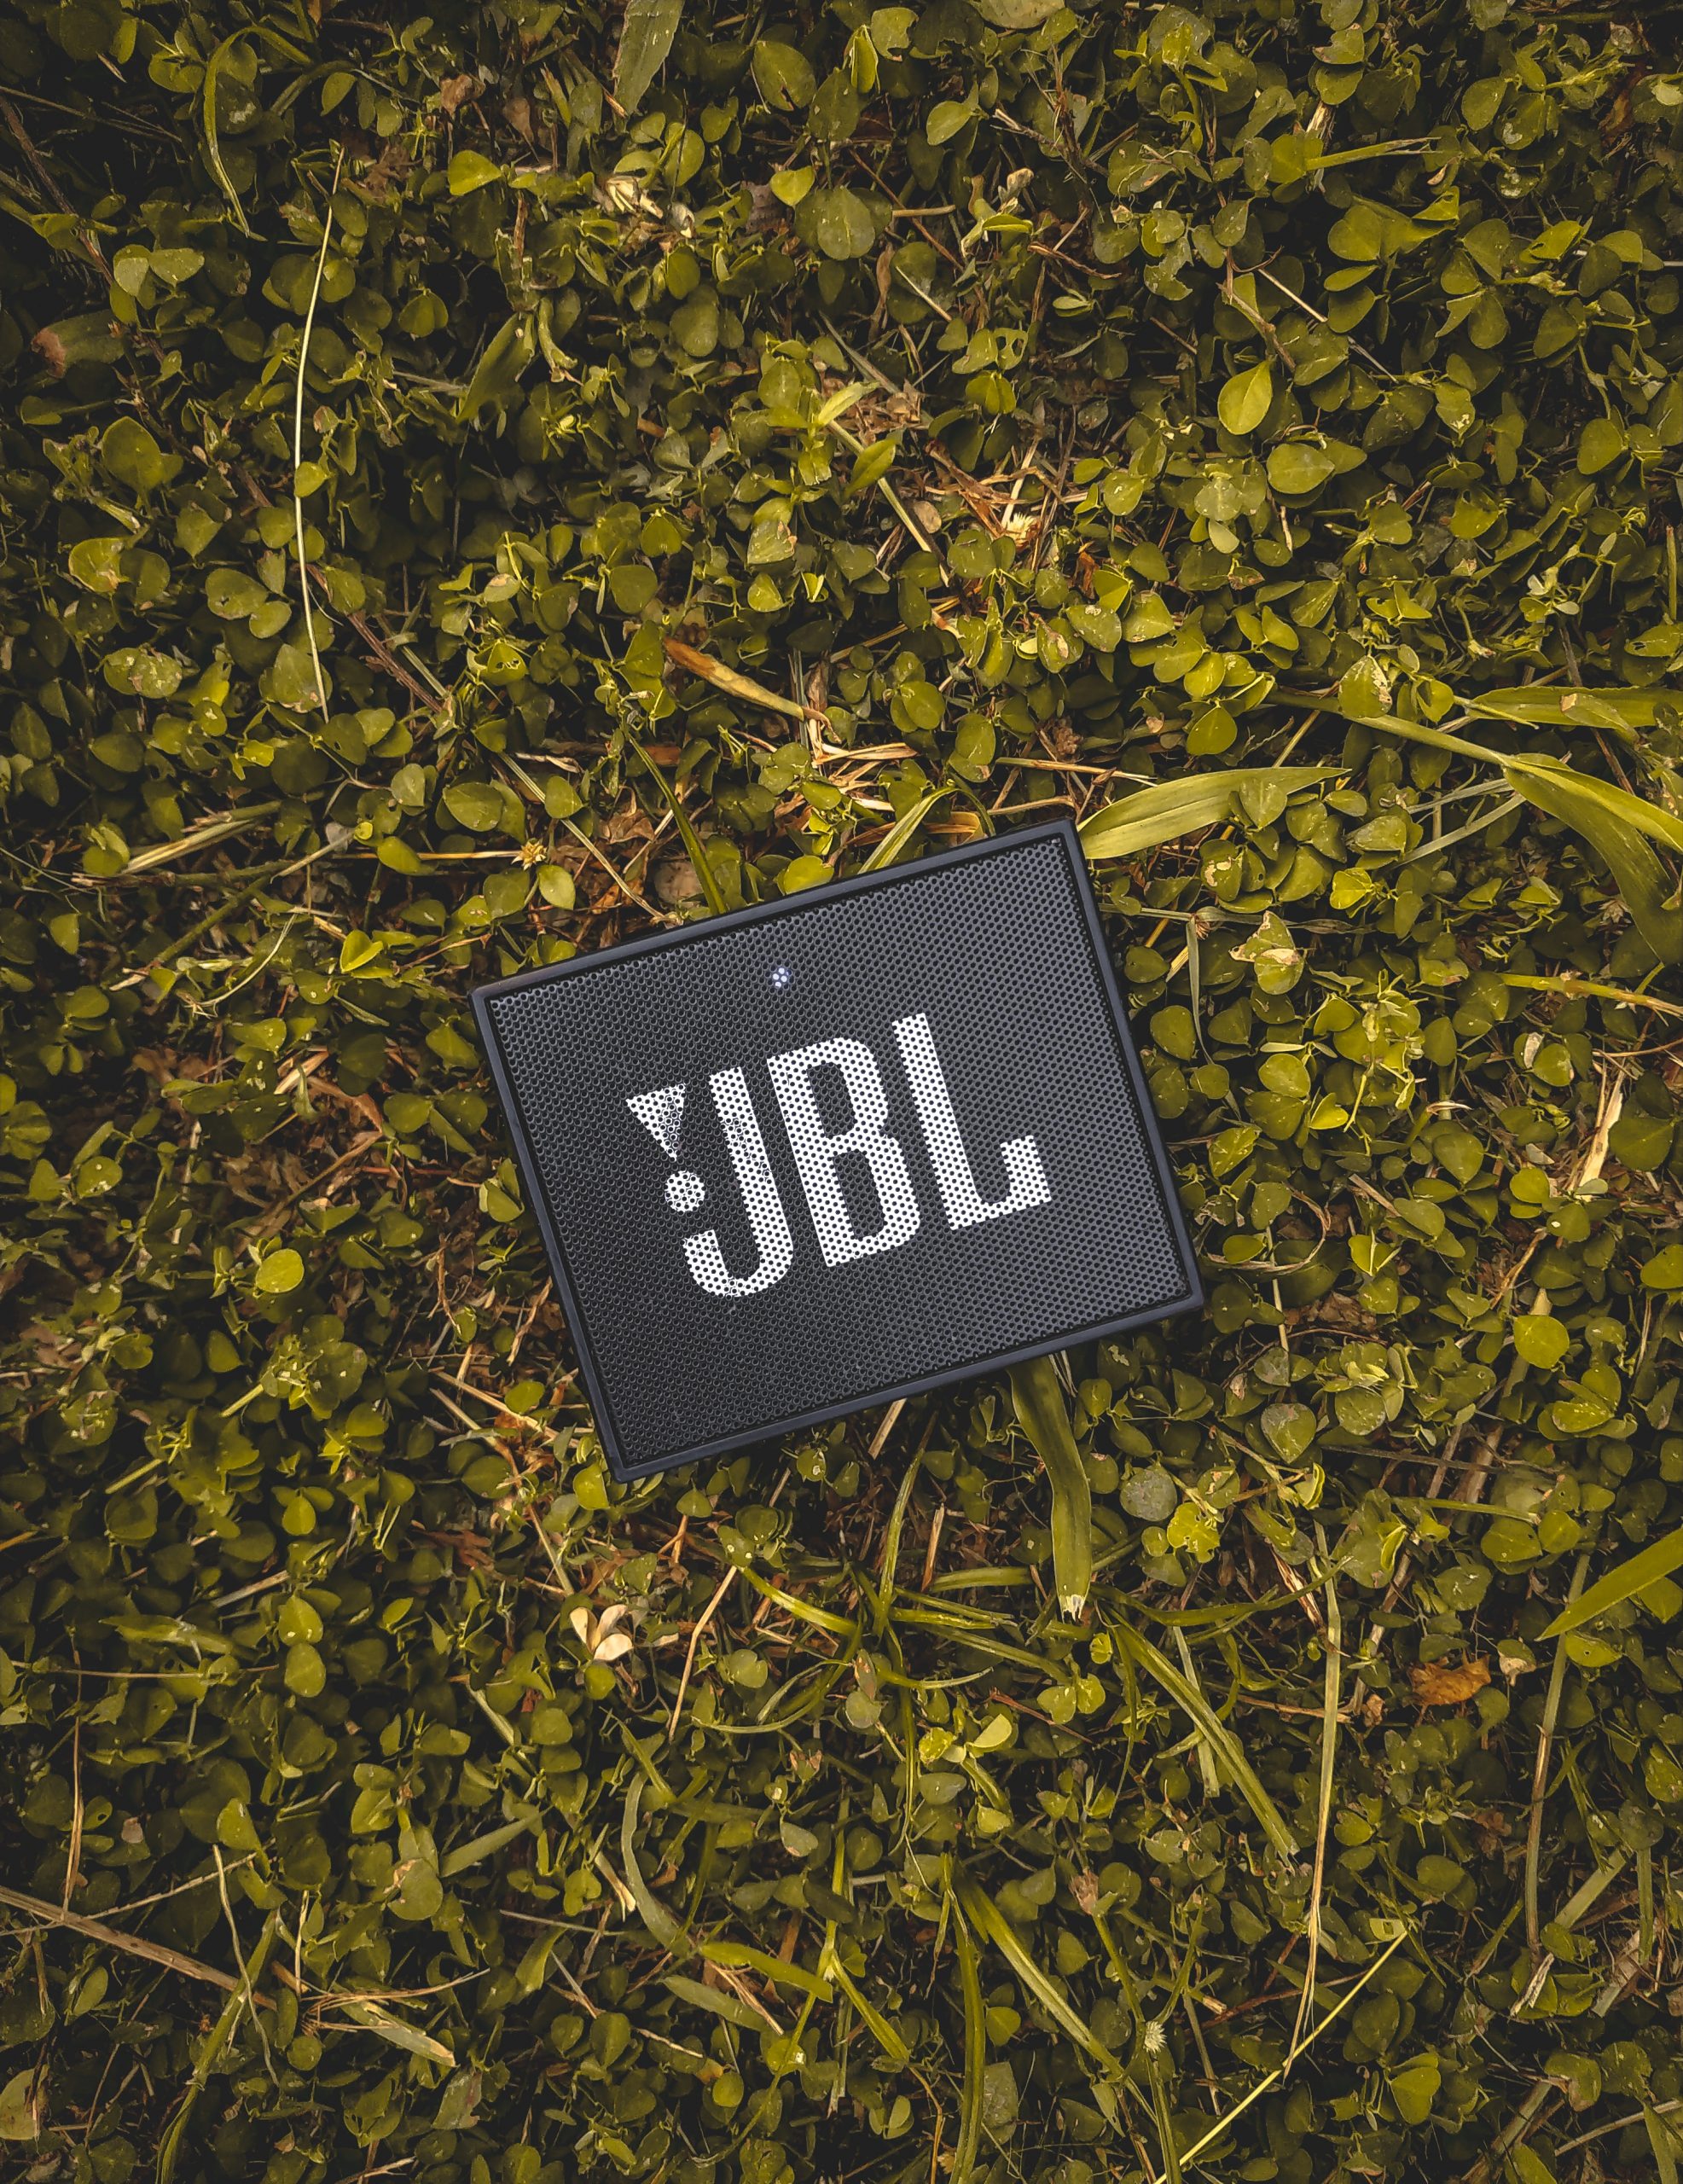 JBL company logo